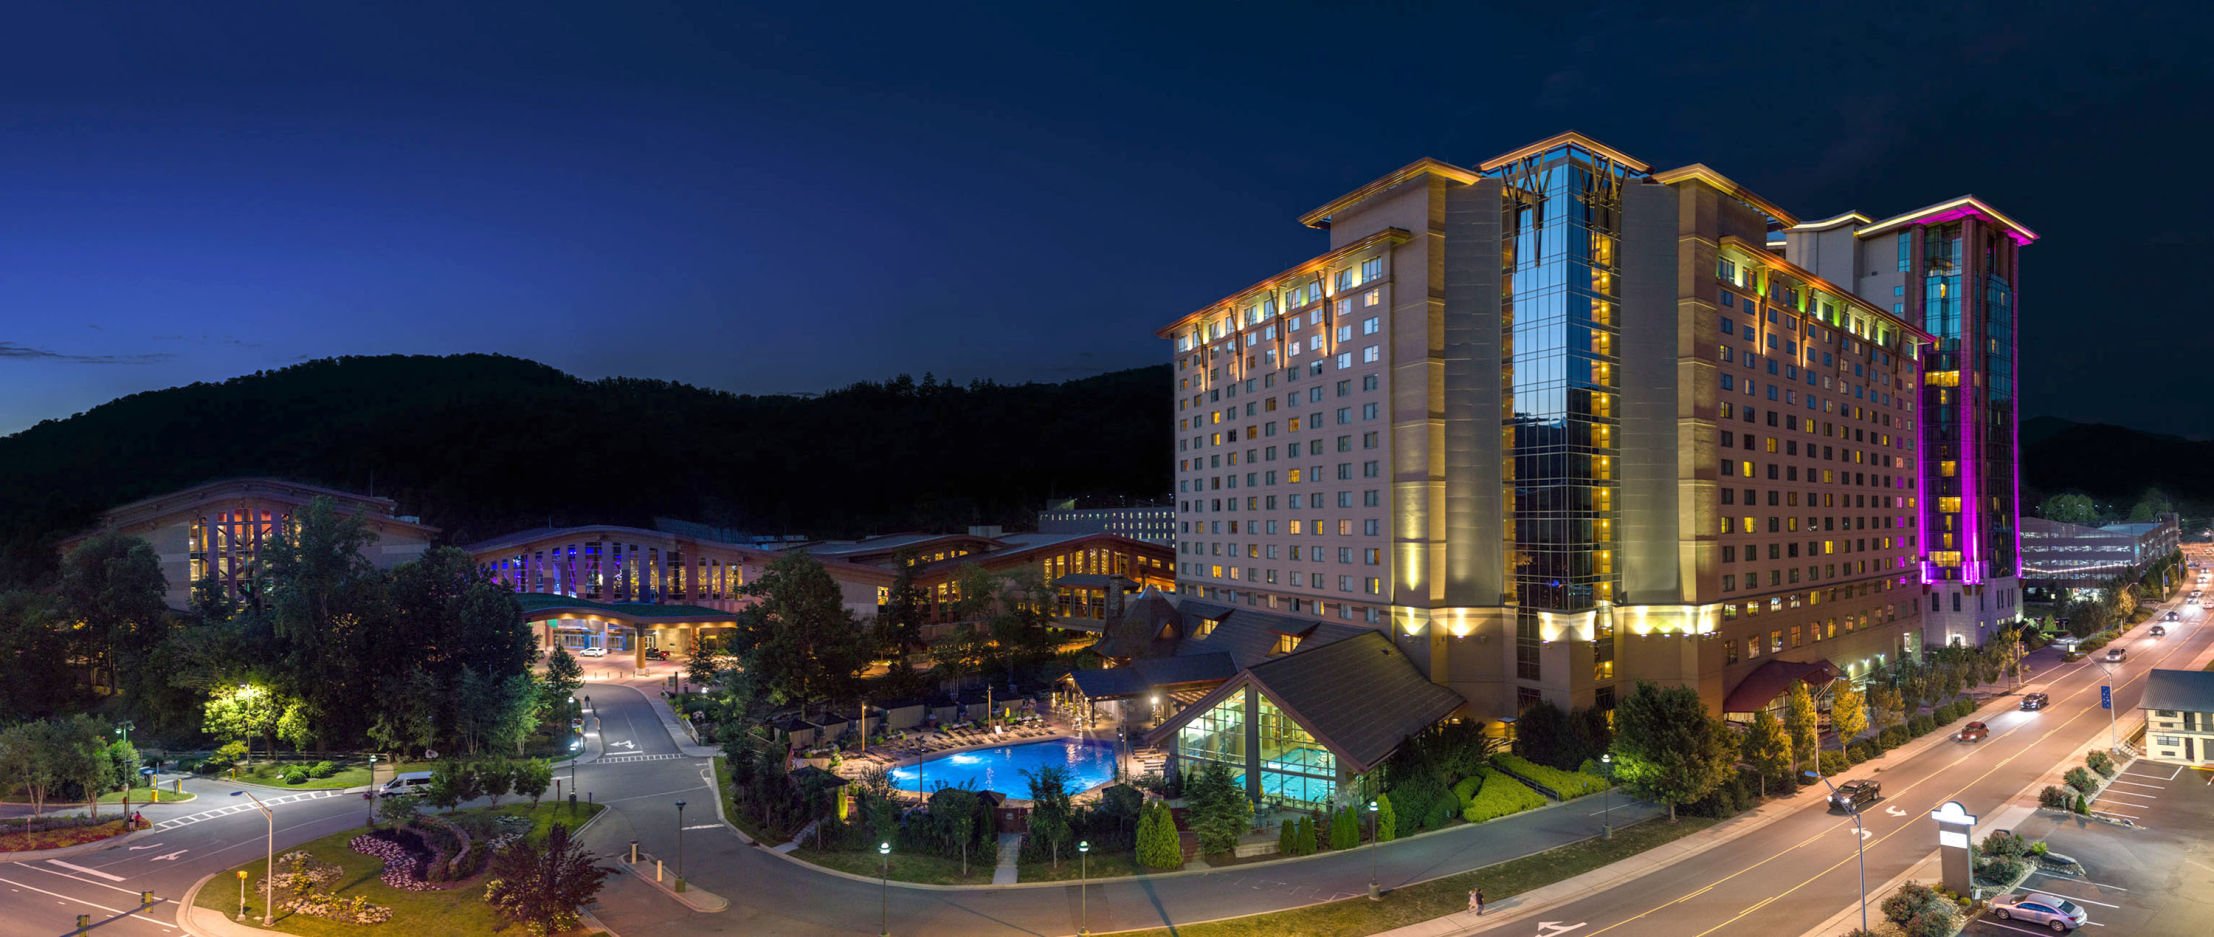 hotel at cherokee casino